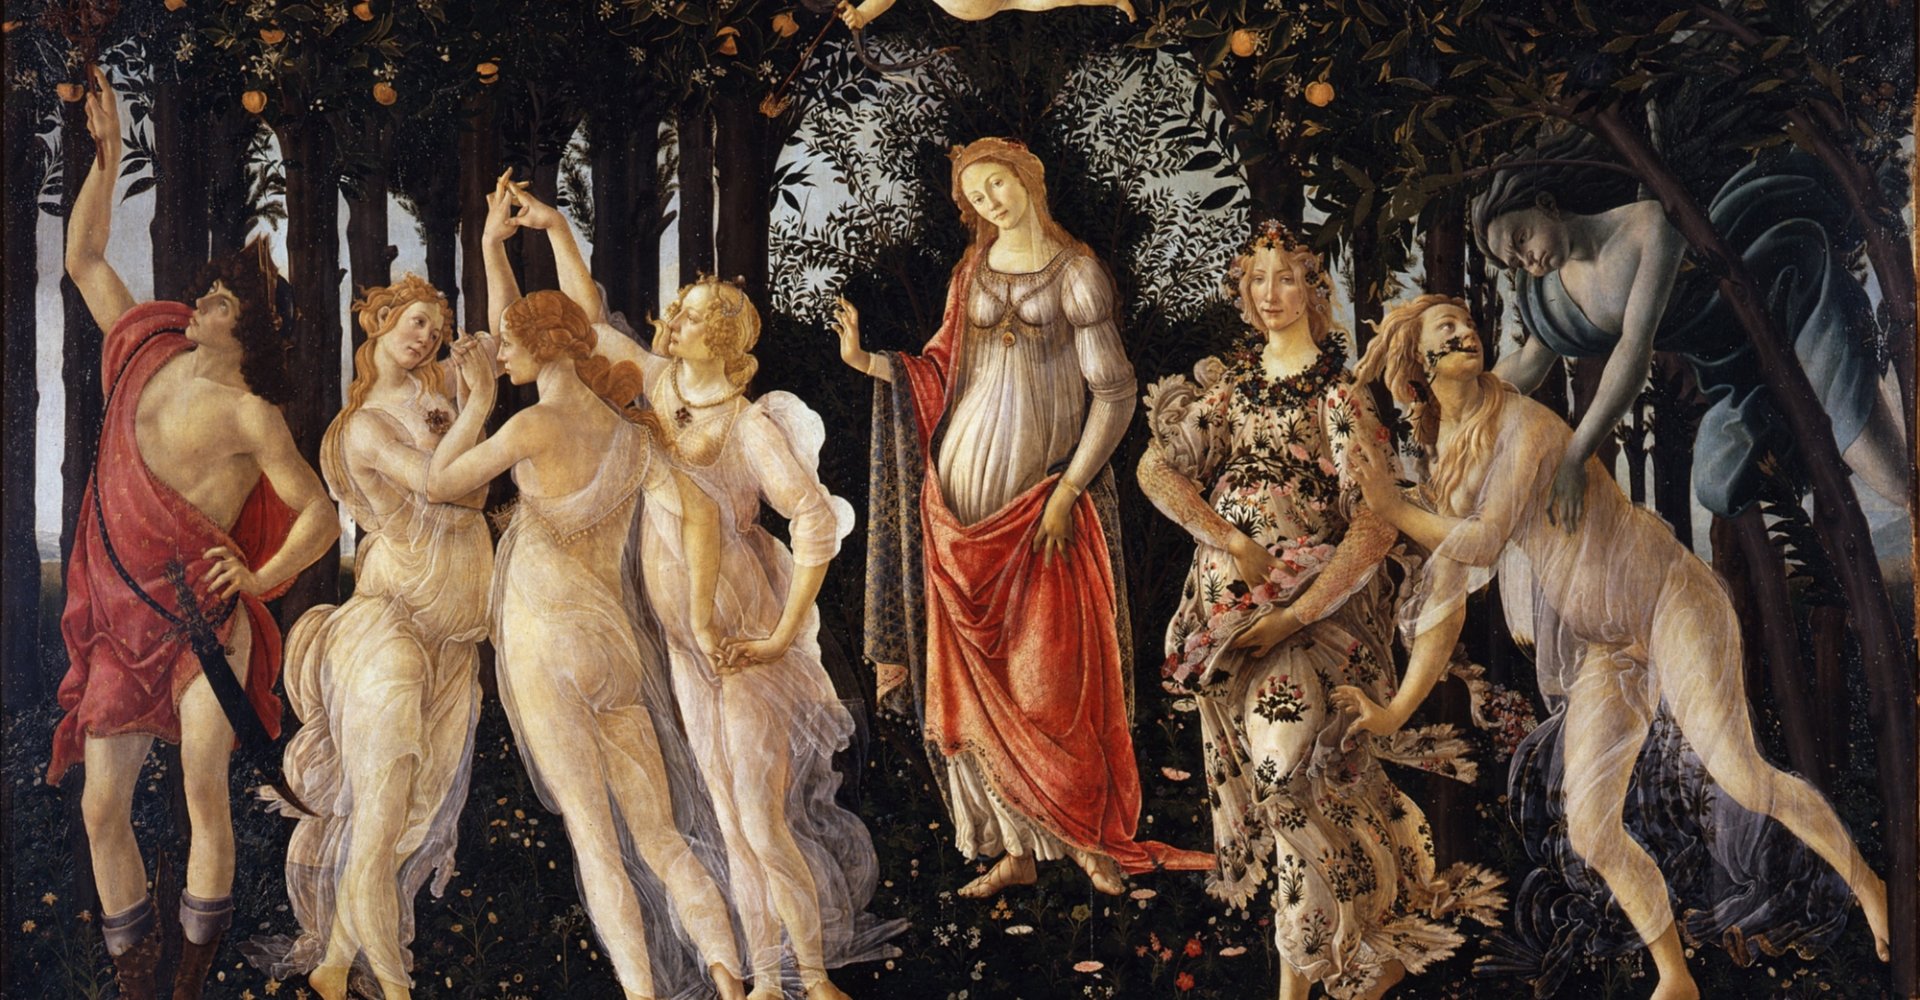 La Primavera de Sandro Botticelli